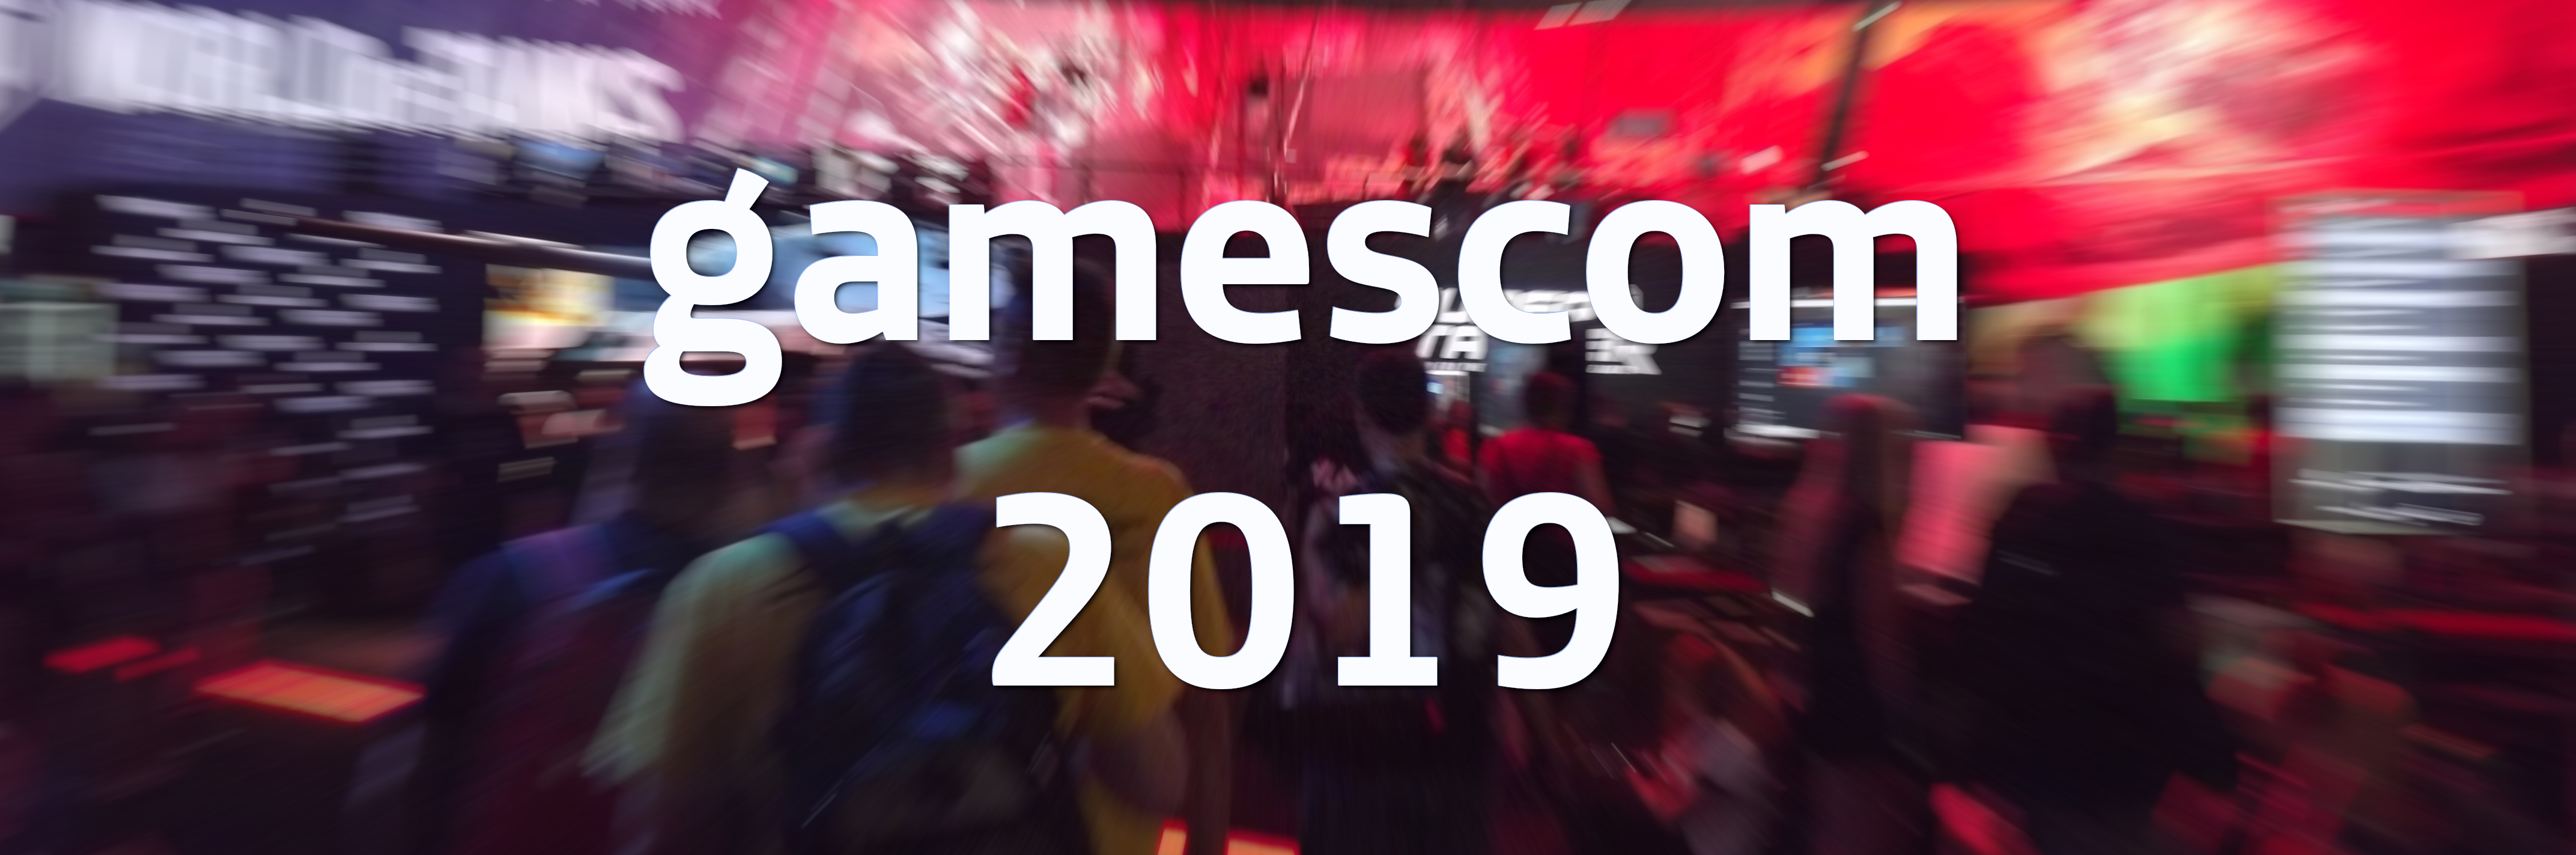 GamesCom 2019